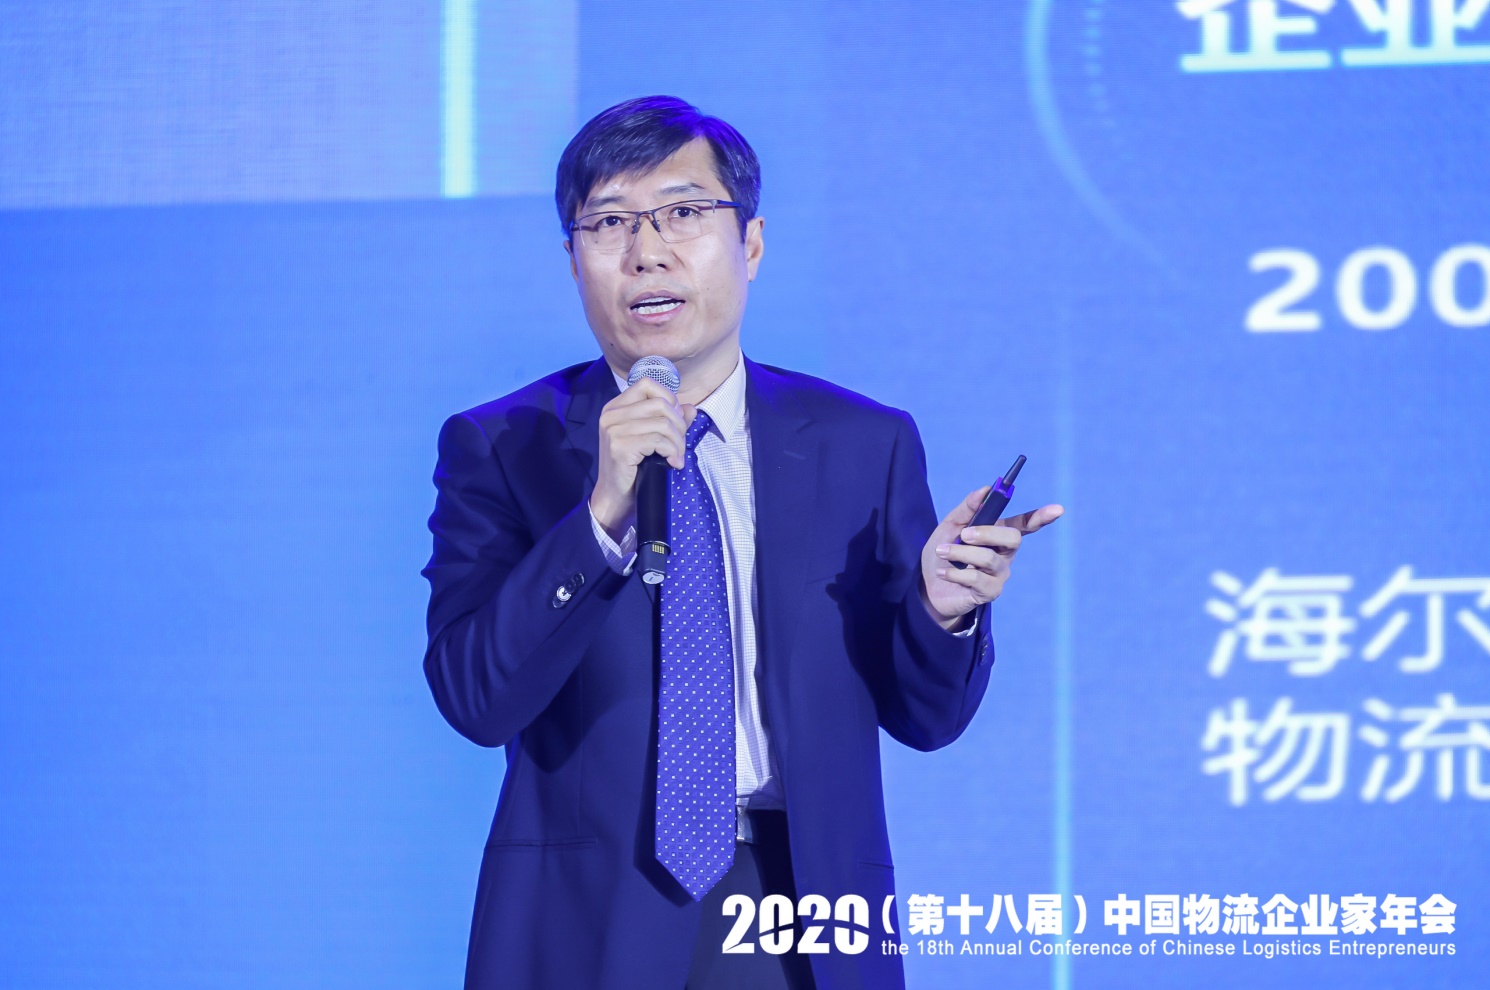 日日顺供应链科技执行董事王正刚在大会上进行分享.jpg